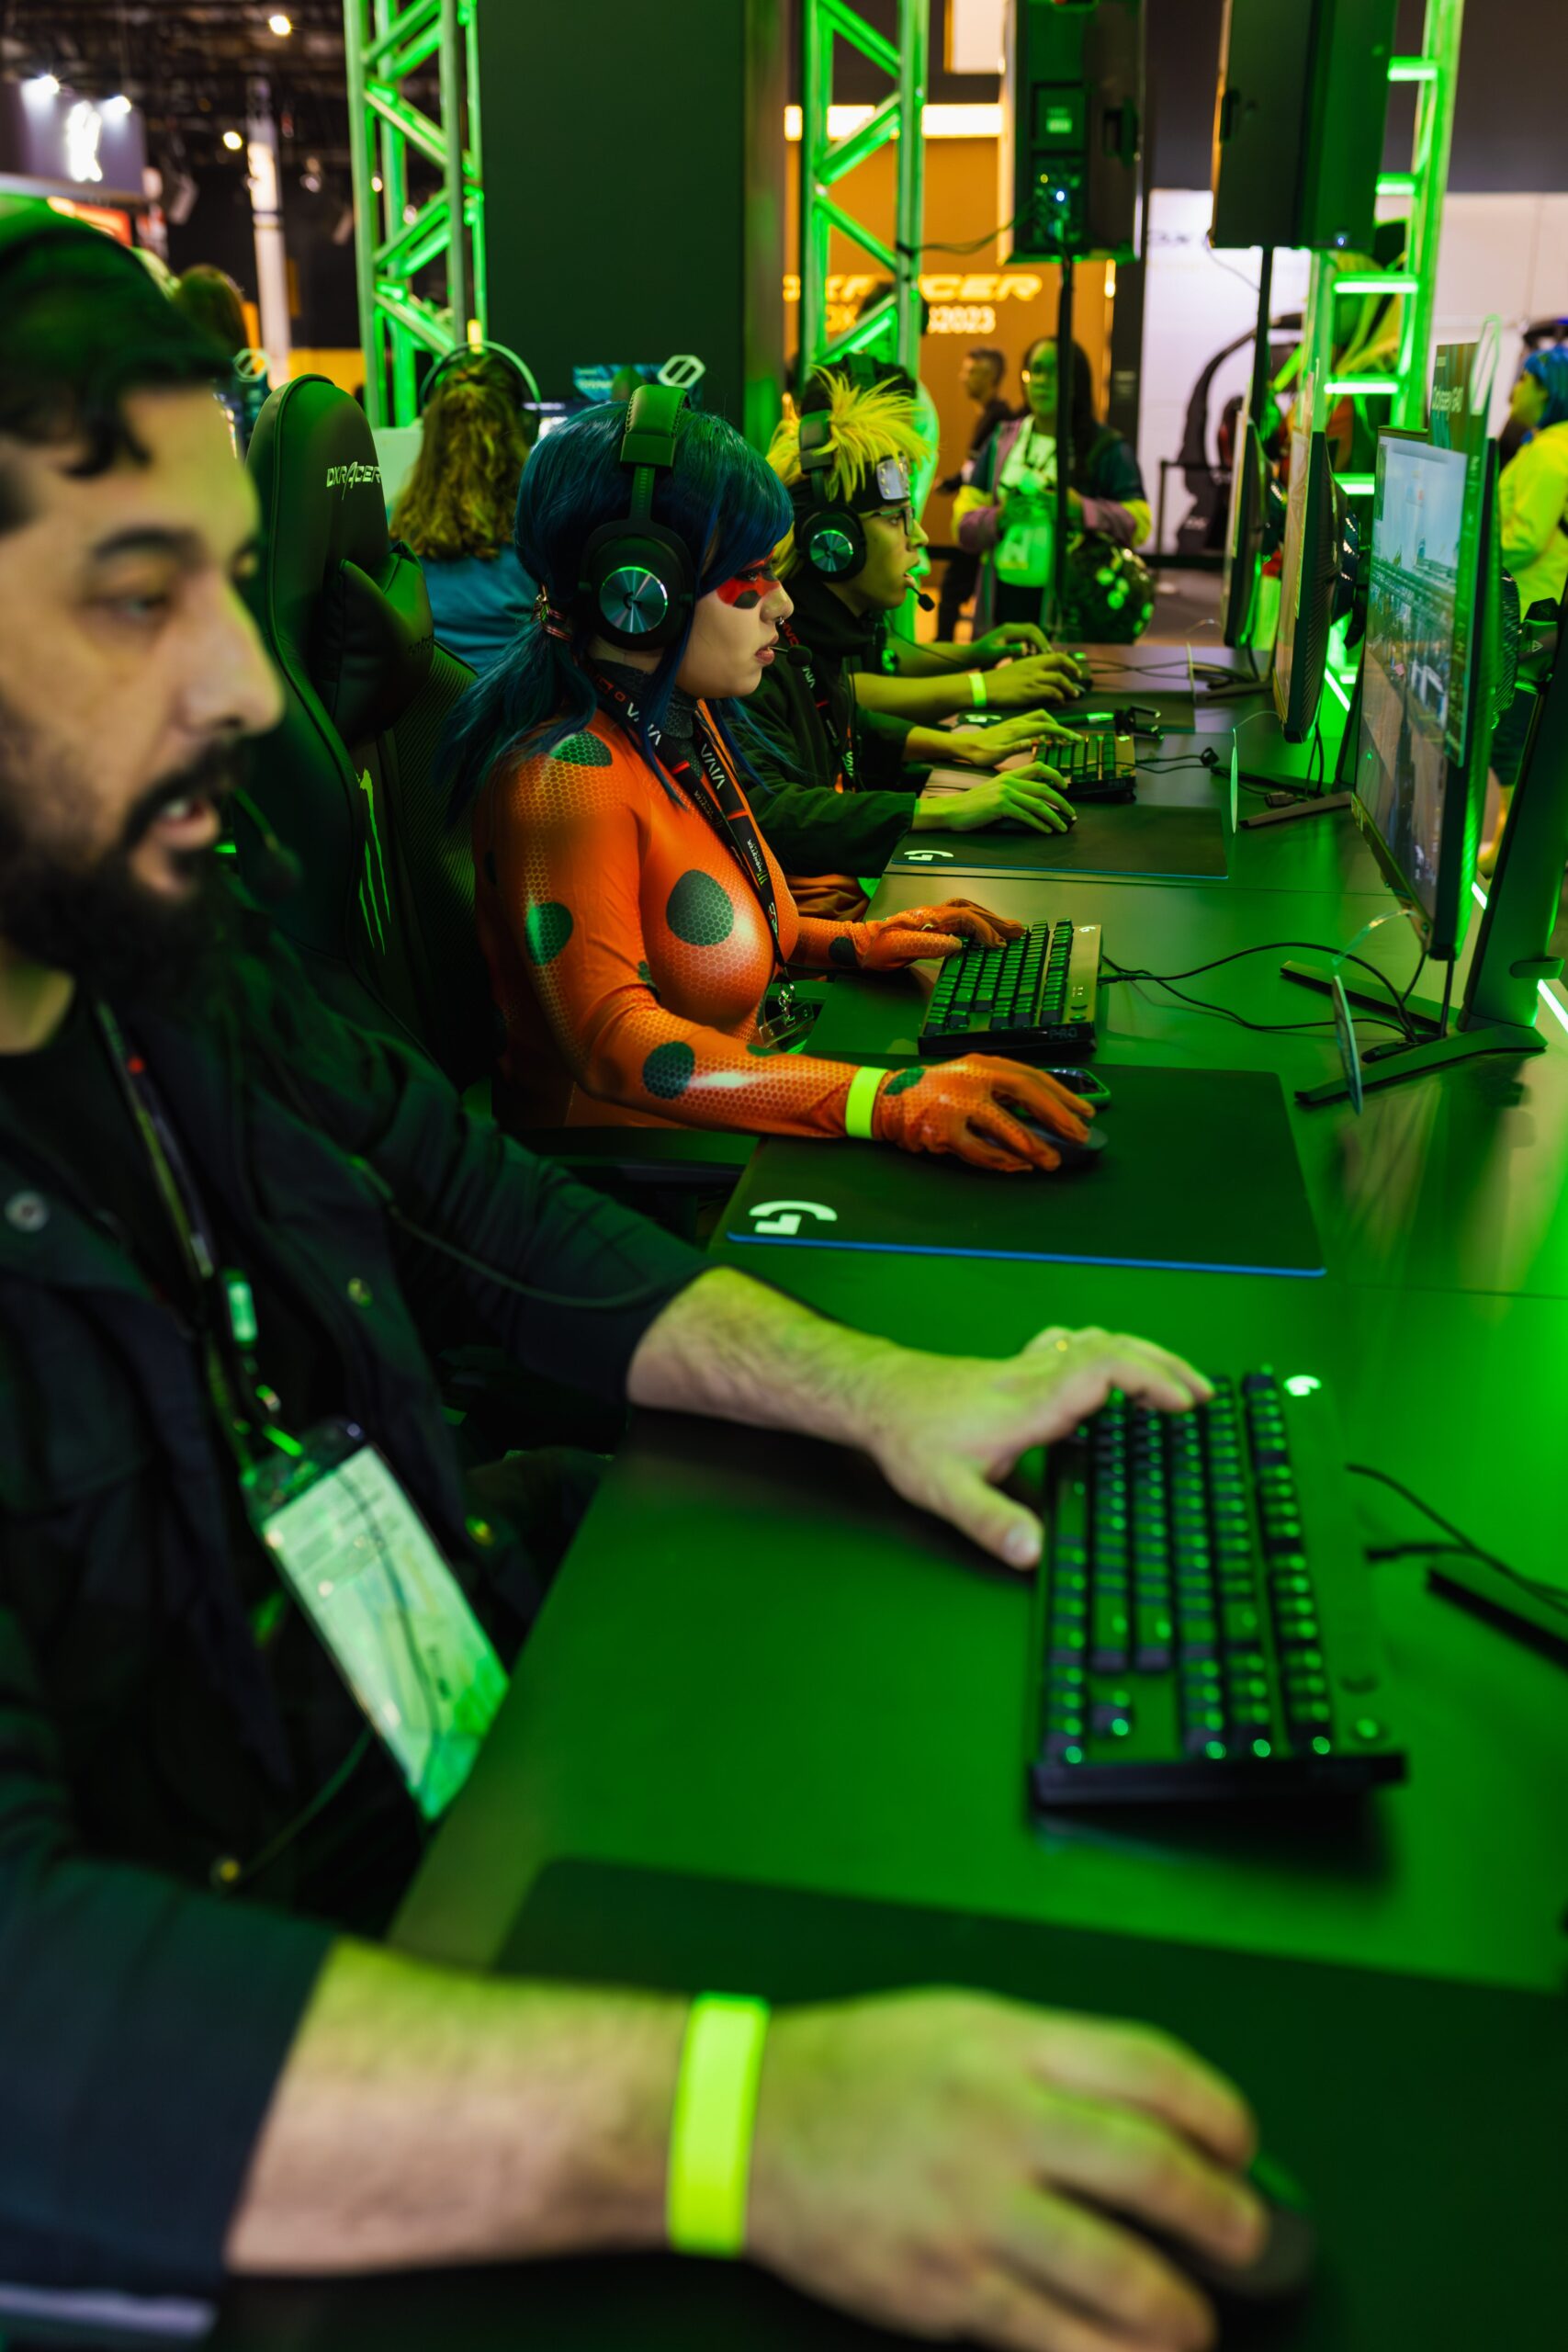 Cosplayers Gaming at a Computer Fair